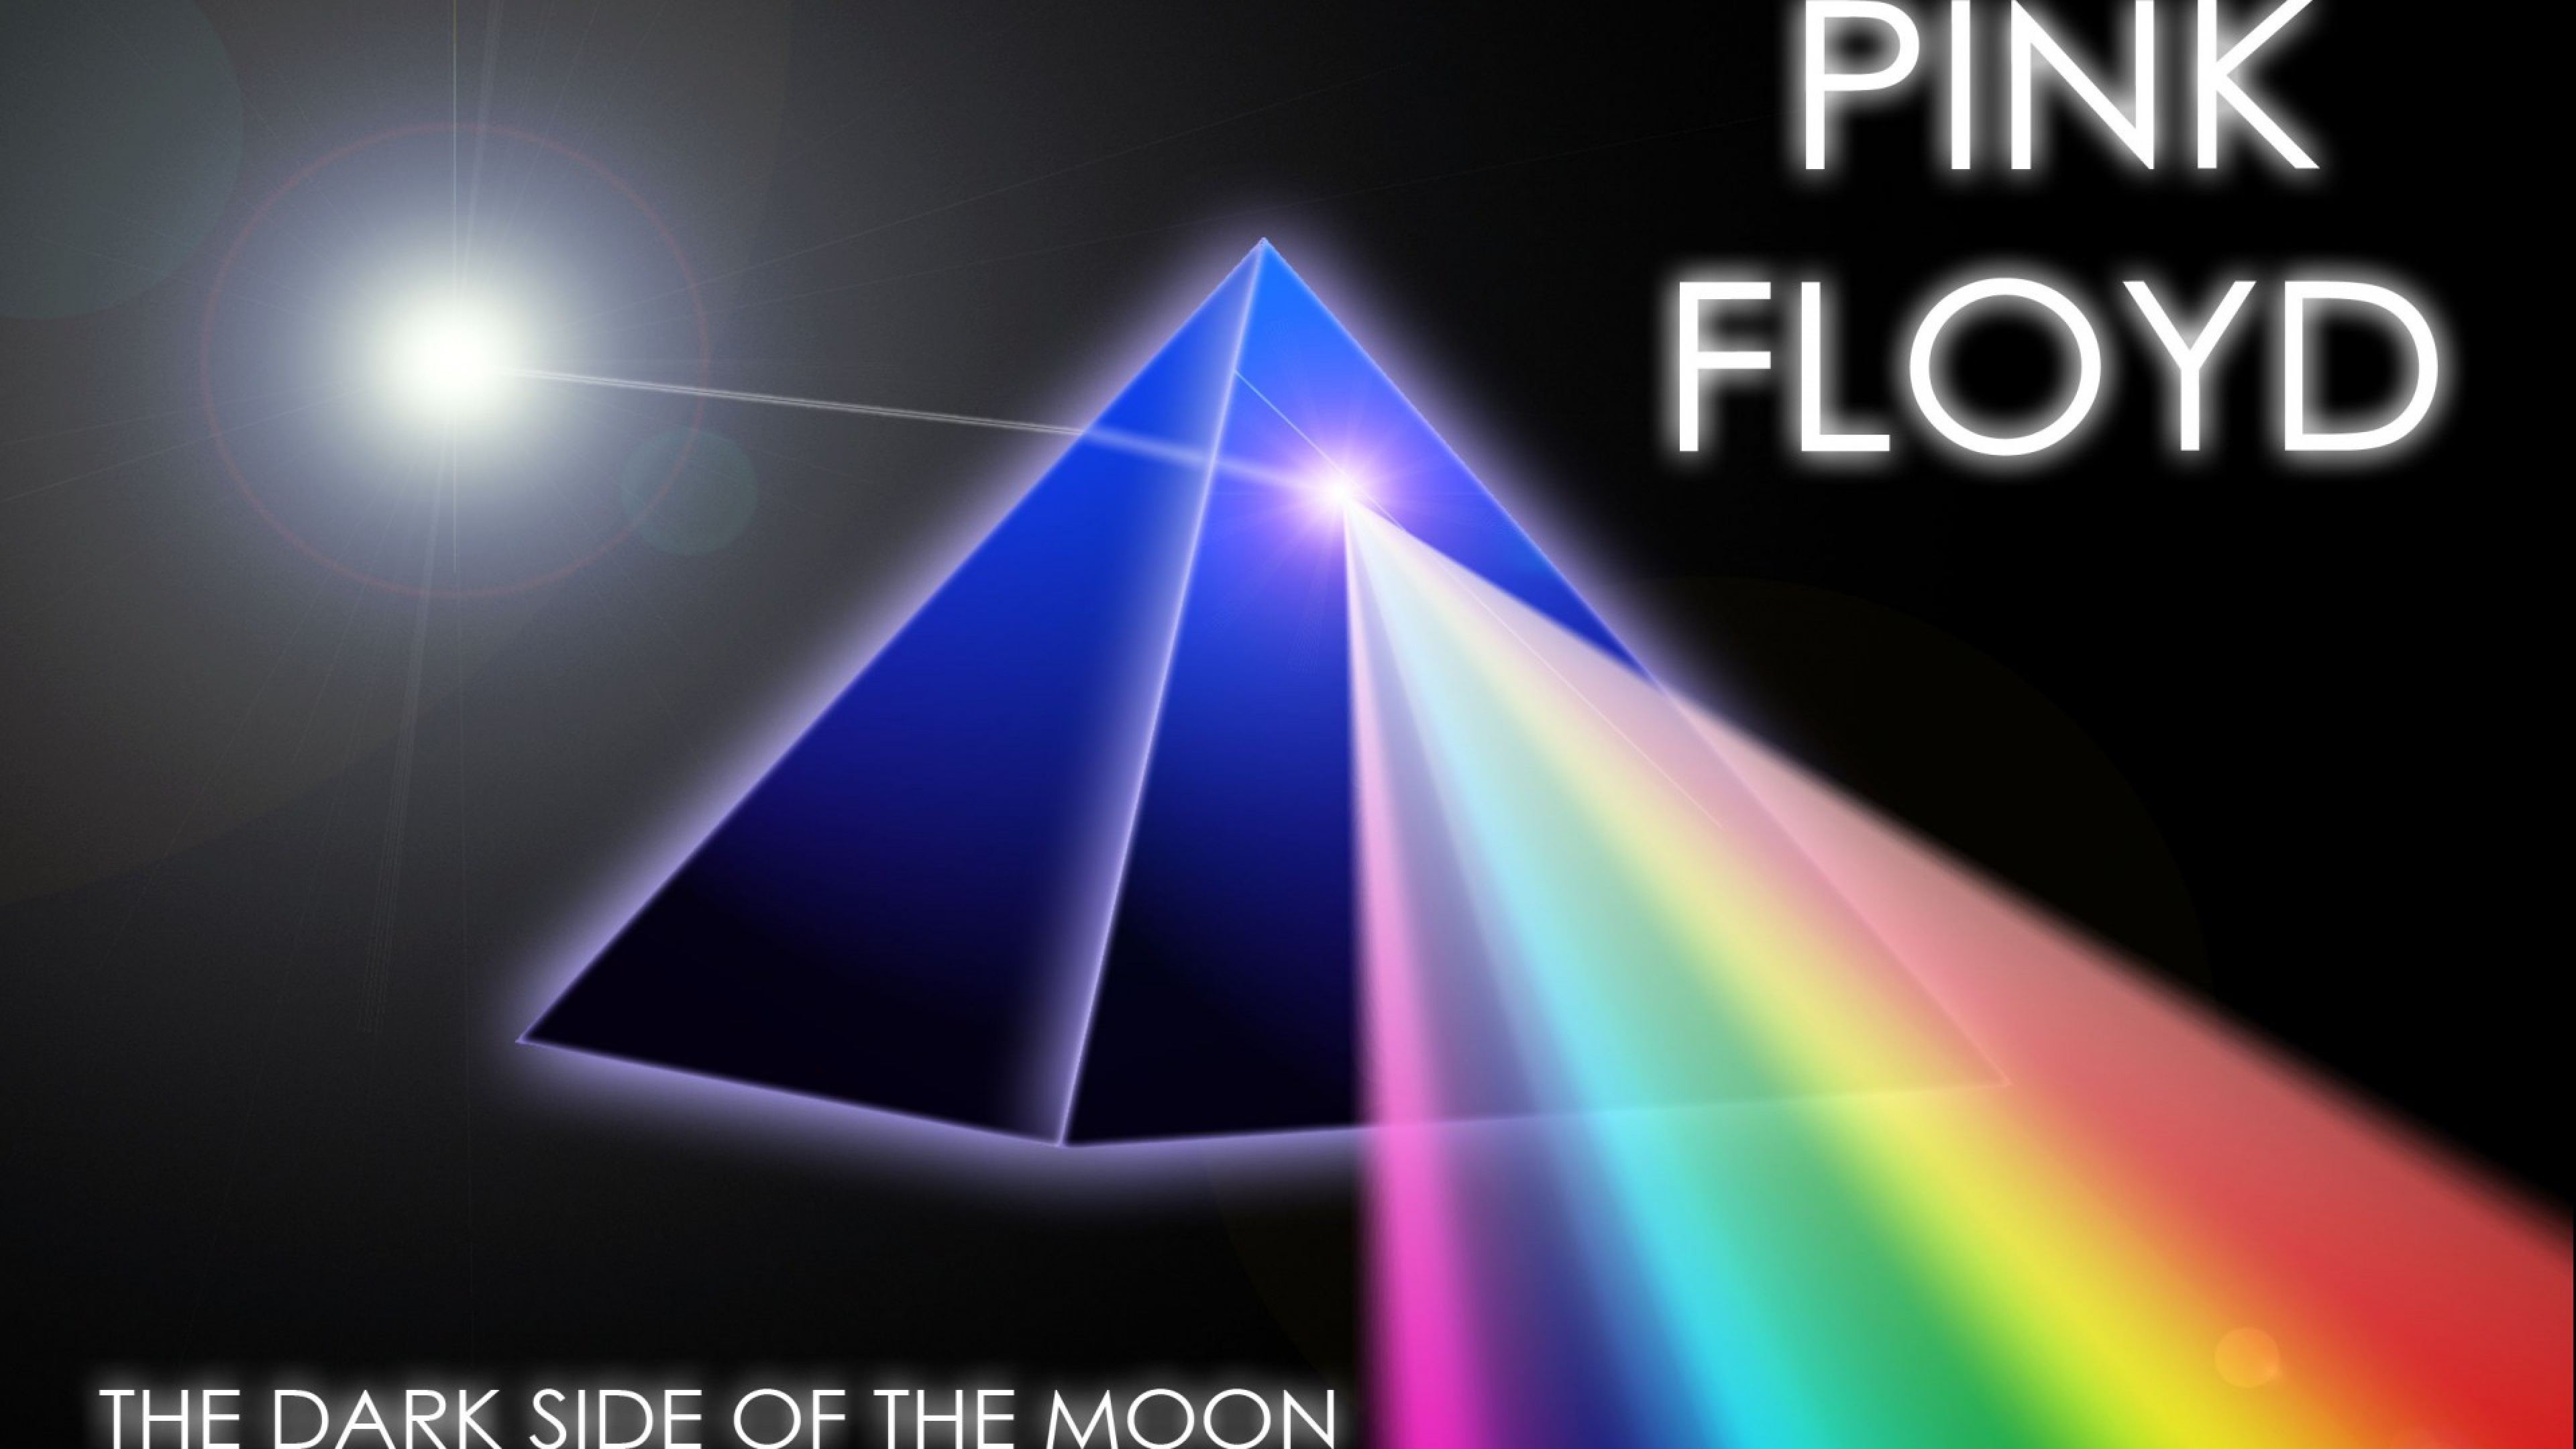 Pink Floyd The dark side of the moon HD Wallpaper 4K Ultra HD - HD Wallpaper  